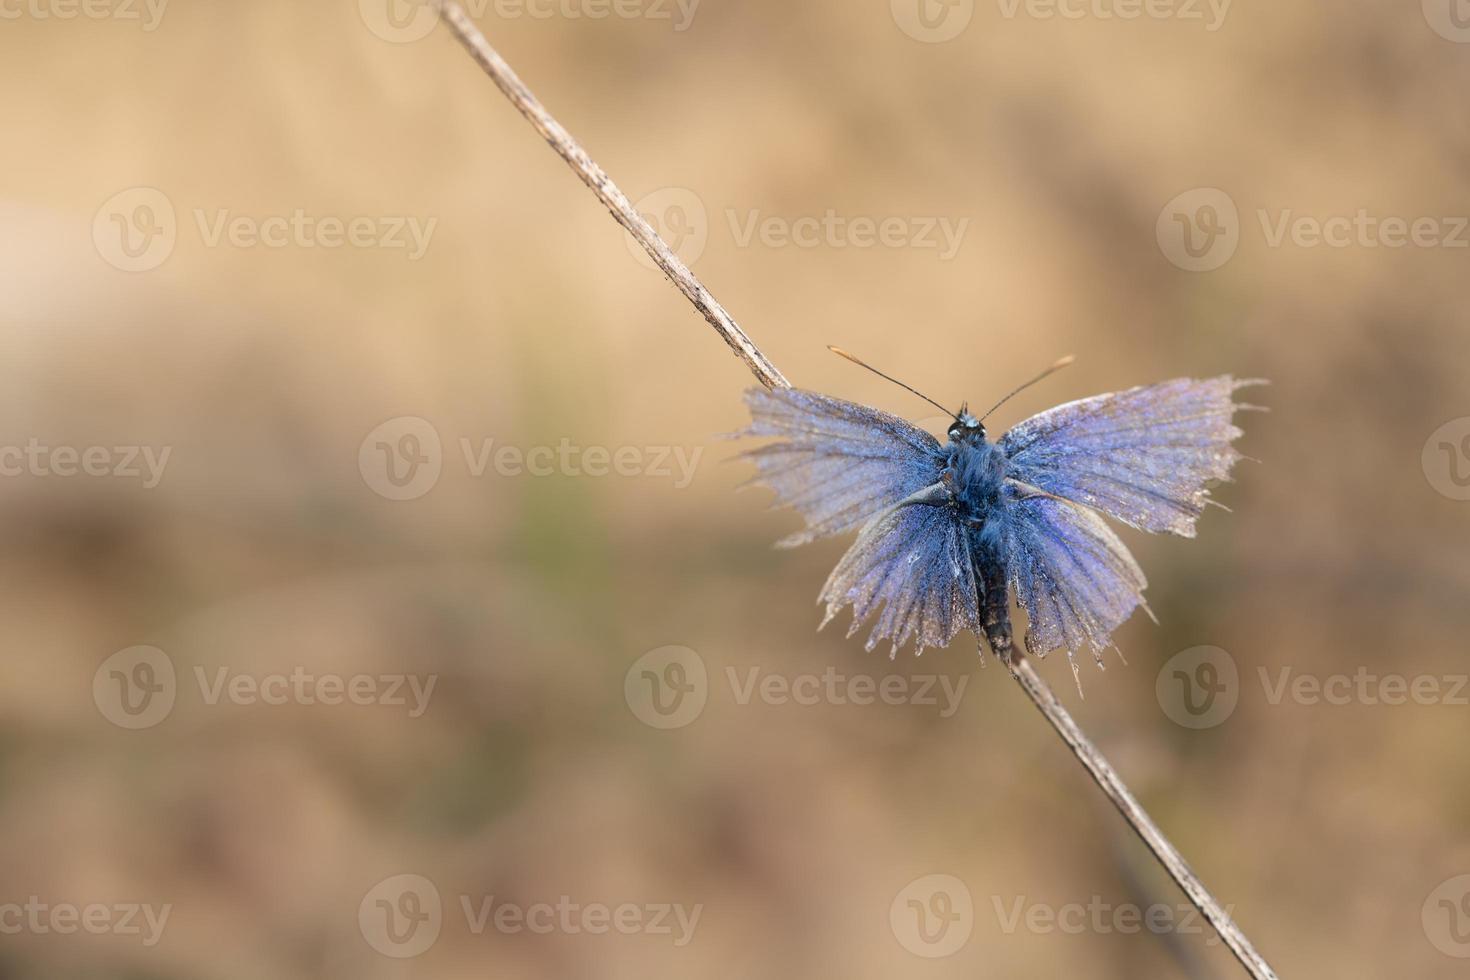 ein kleiner alter blauer schmetterling, ein gemeiner blauer, sitzt auf einem trockenen zweig. Die Flügel sind an den Rändern ausgefranst foto